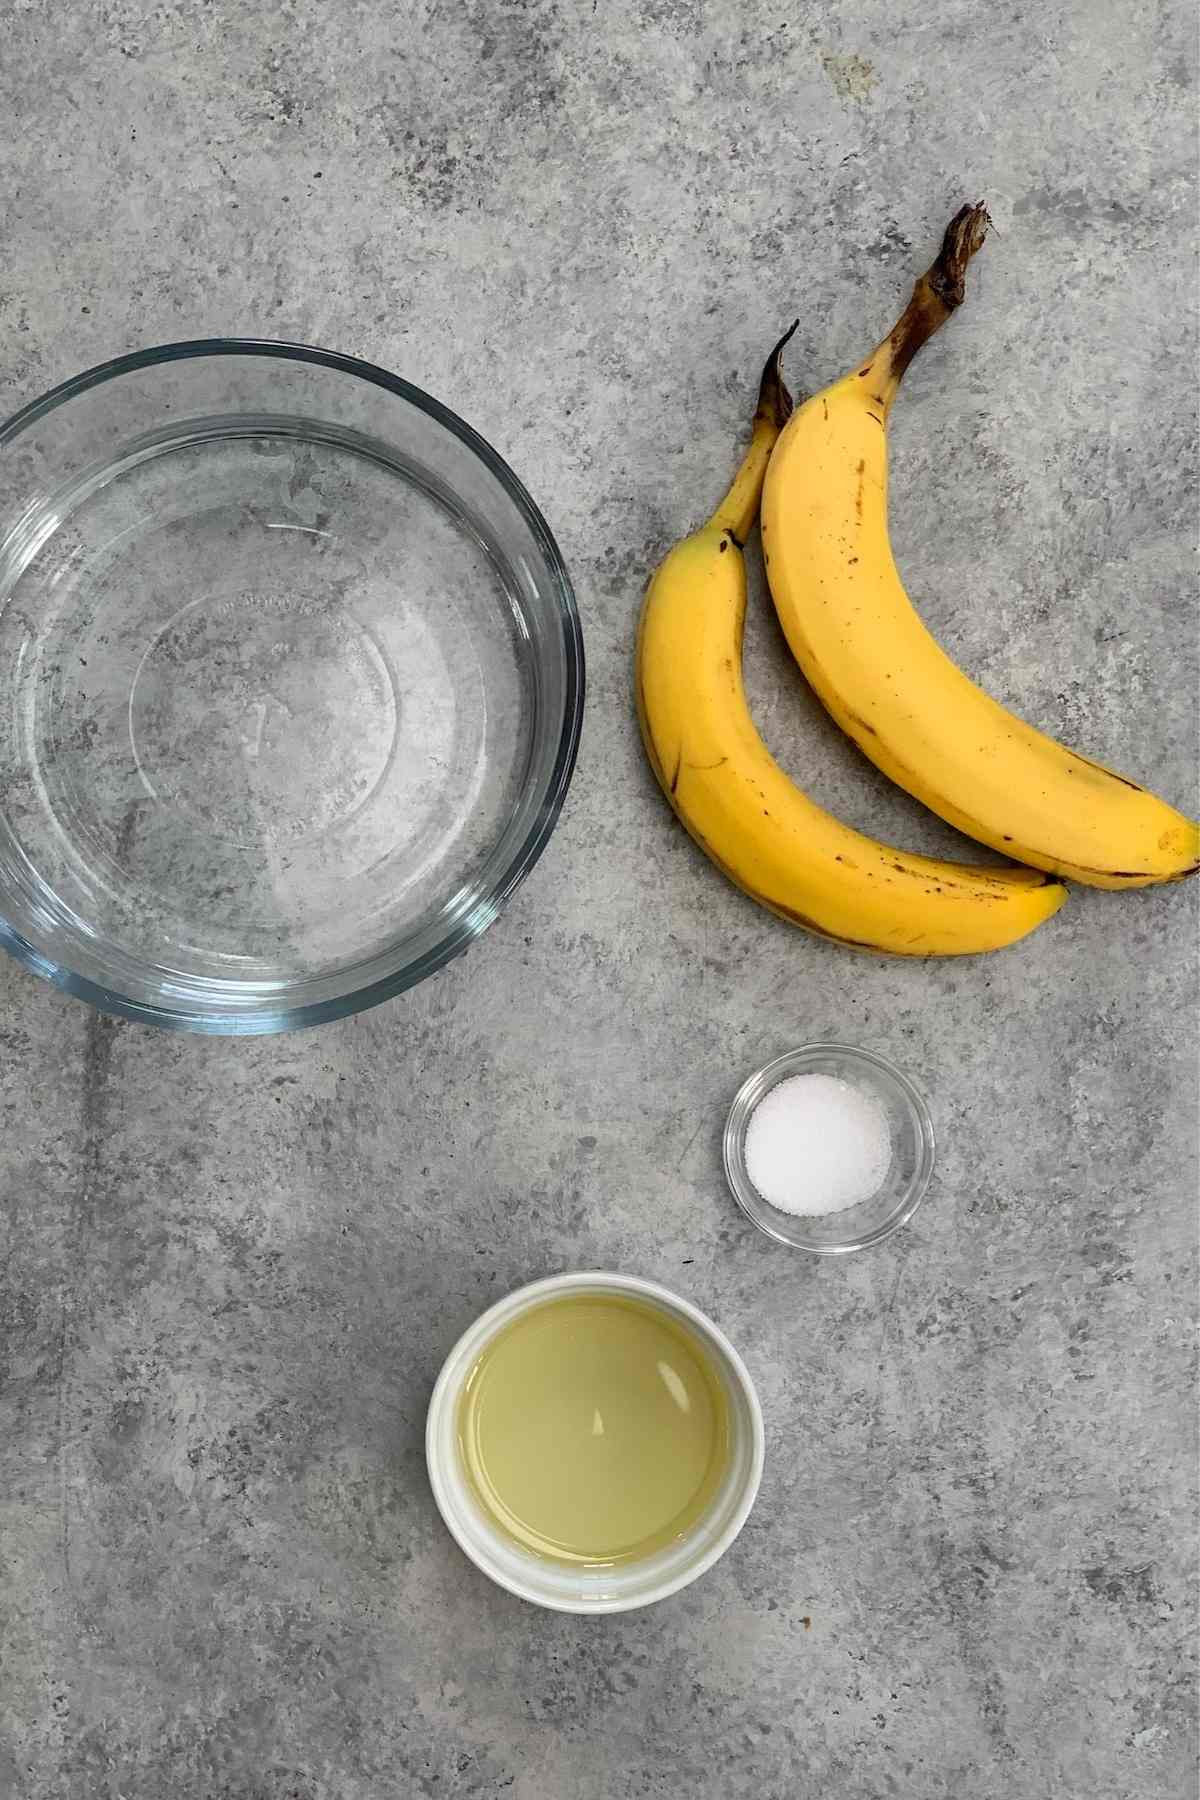 Dehydrating Bananas ingredient